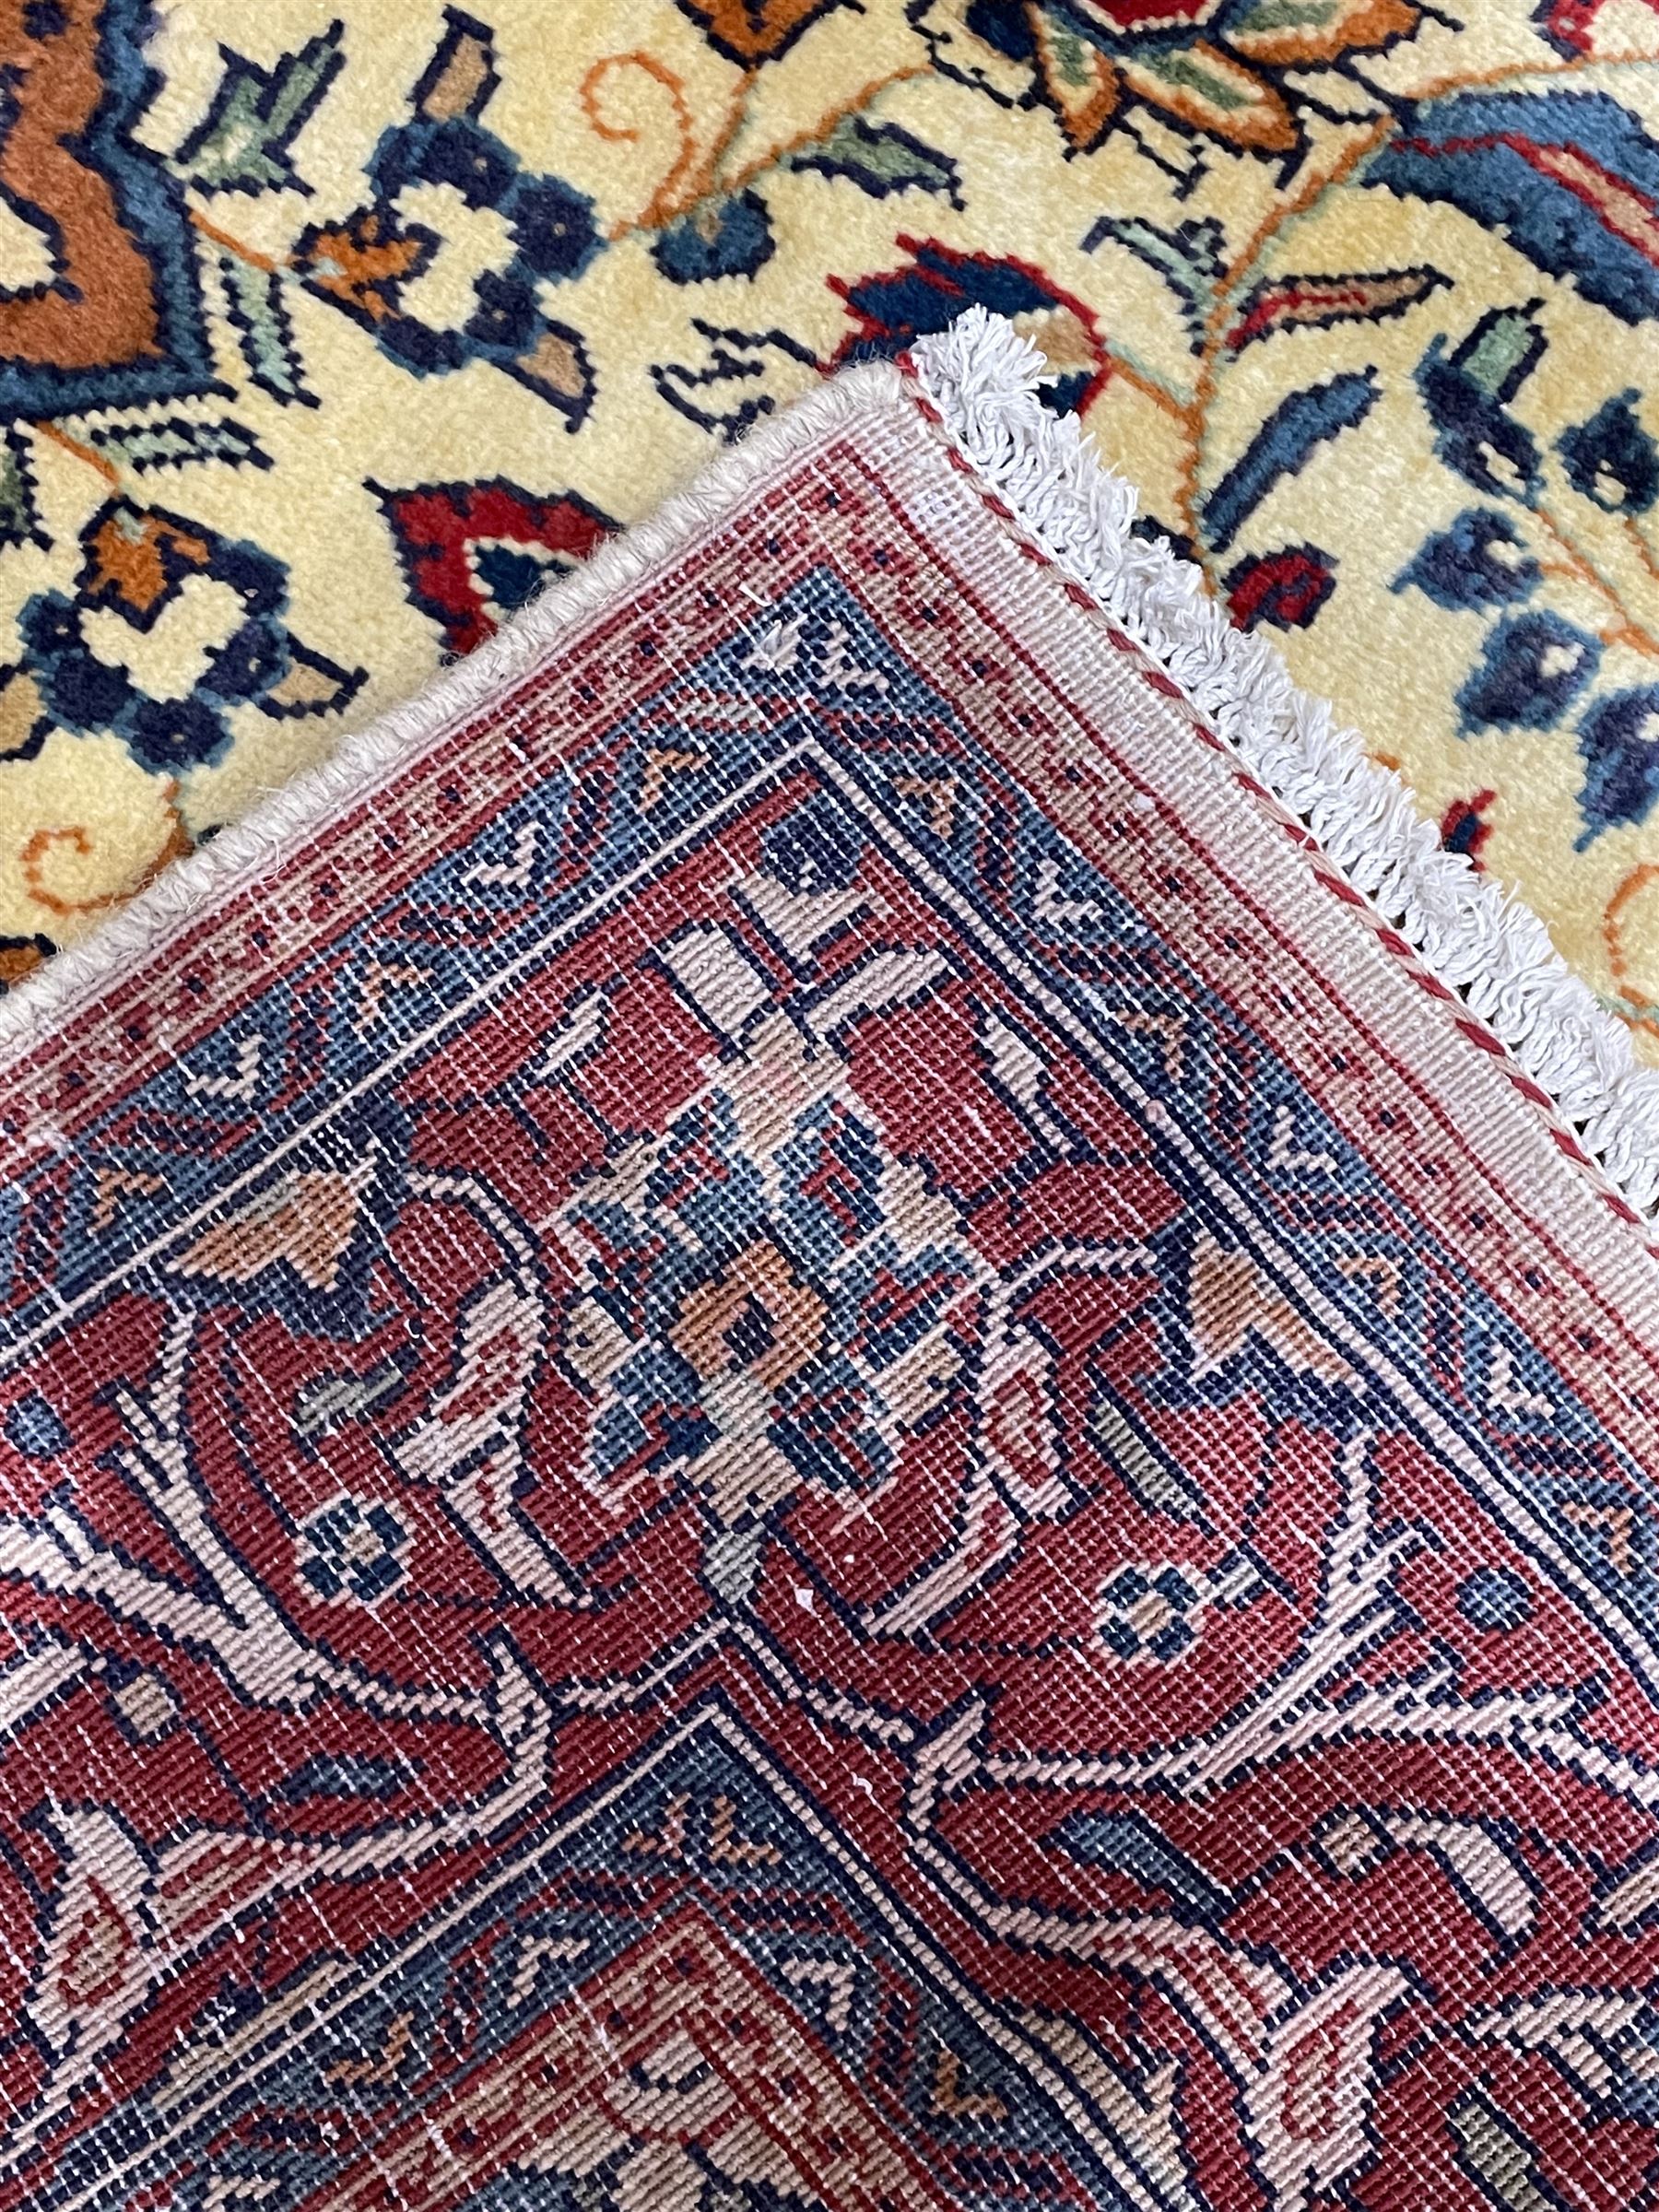 Persian Mahal rug - Image 5 of 5